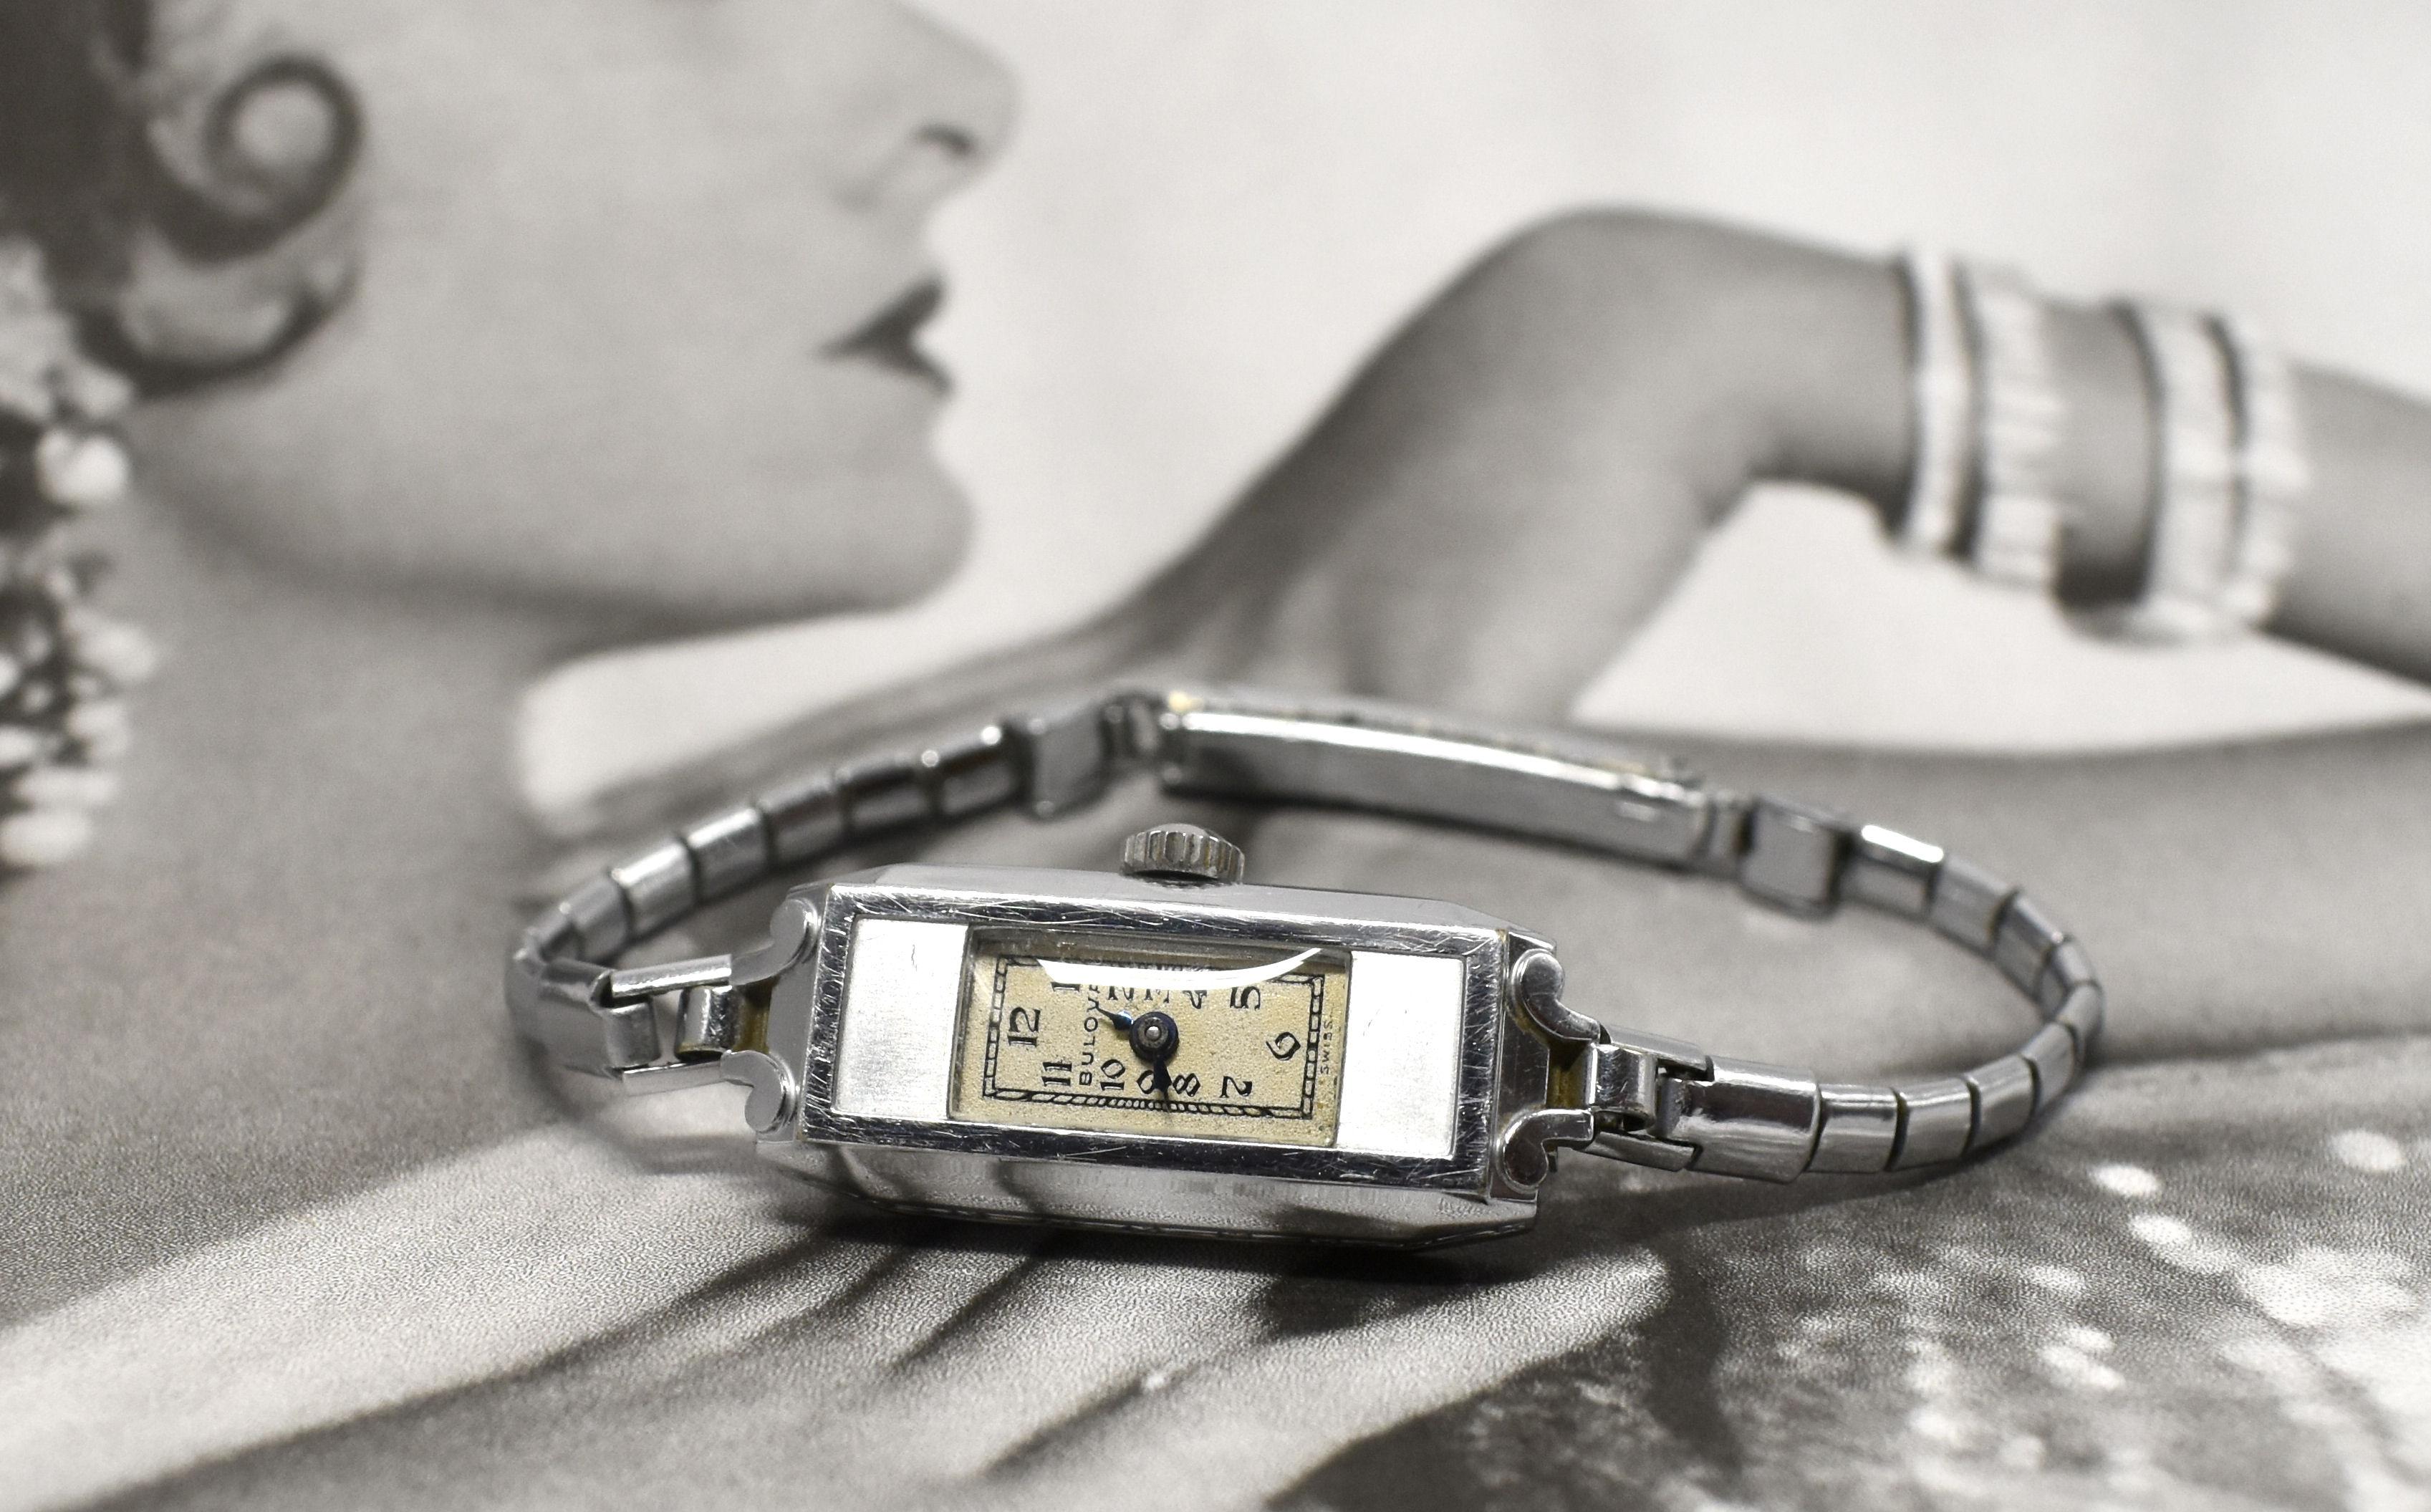 Wir freuen uns, Ihnen diese wunderschöne Art Deco Damenuhr der amerikanischen Uhrenfirma Bulova anbieten zu können. Zur Auswahl steht diese sehr attraktive Bulova 'Miss America' Damen-Handgelenkuhr mit einem 7-steinigen Bulova 4AF Uhrwerk mit dem